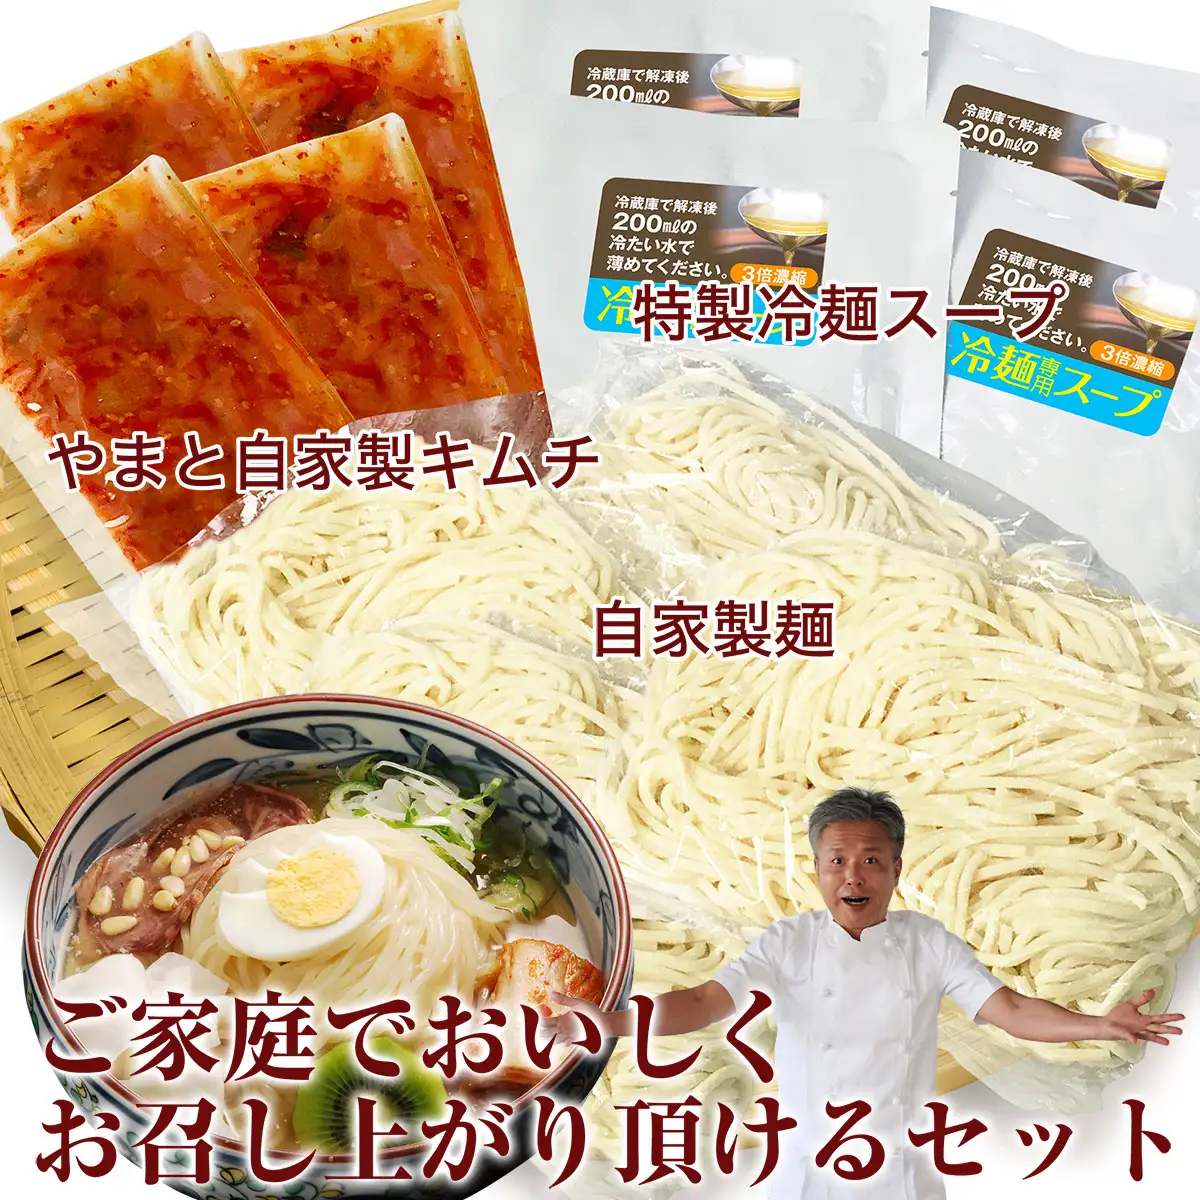 松阪牛角切りステーキ100g×4パック+冷麺4食